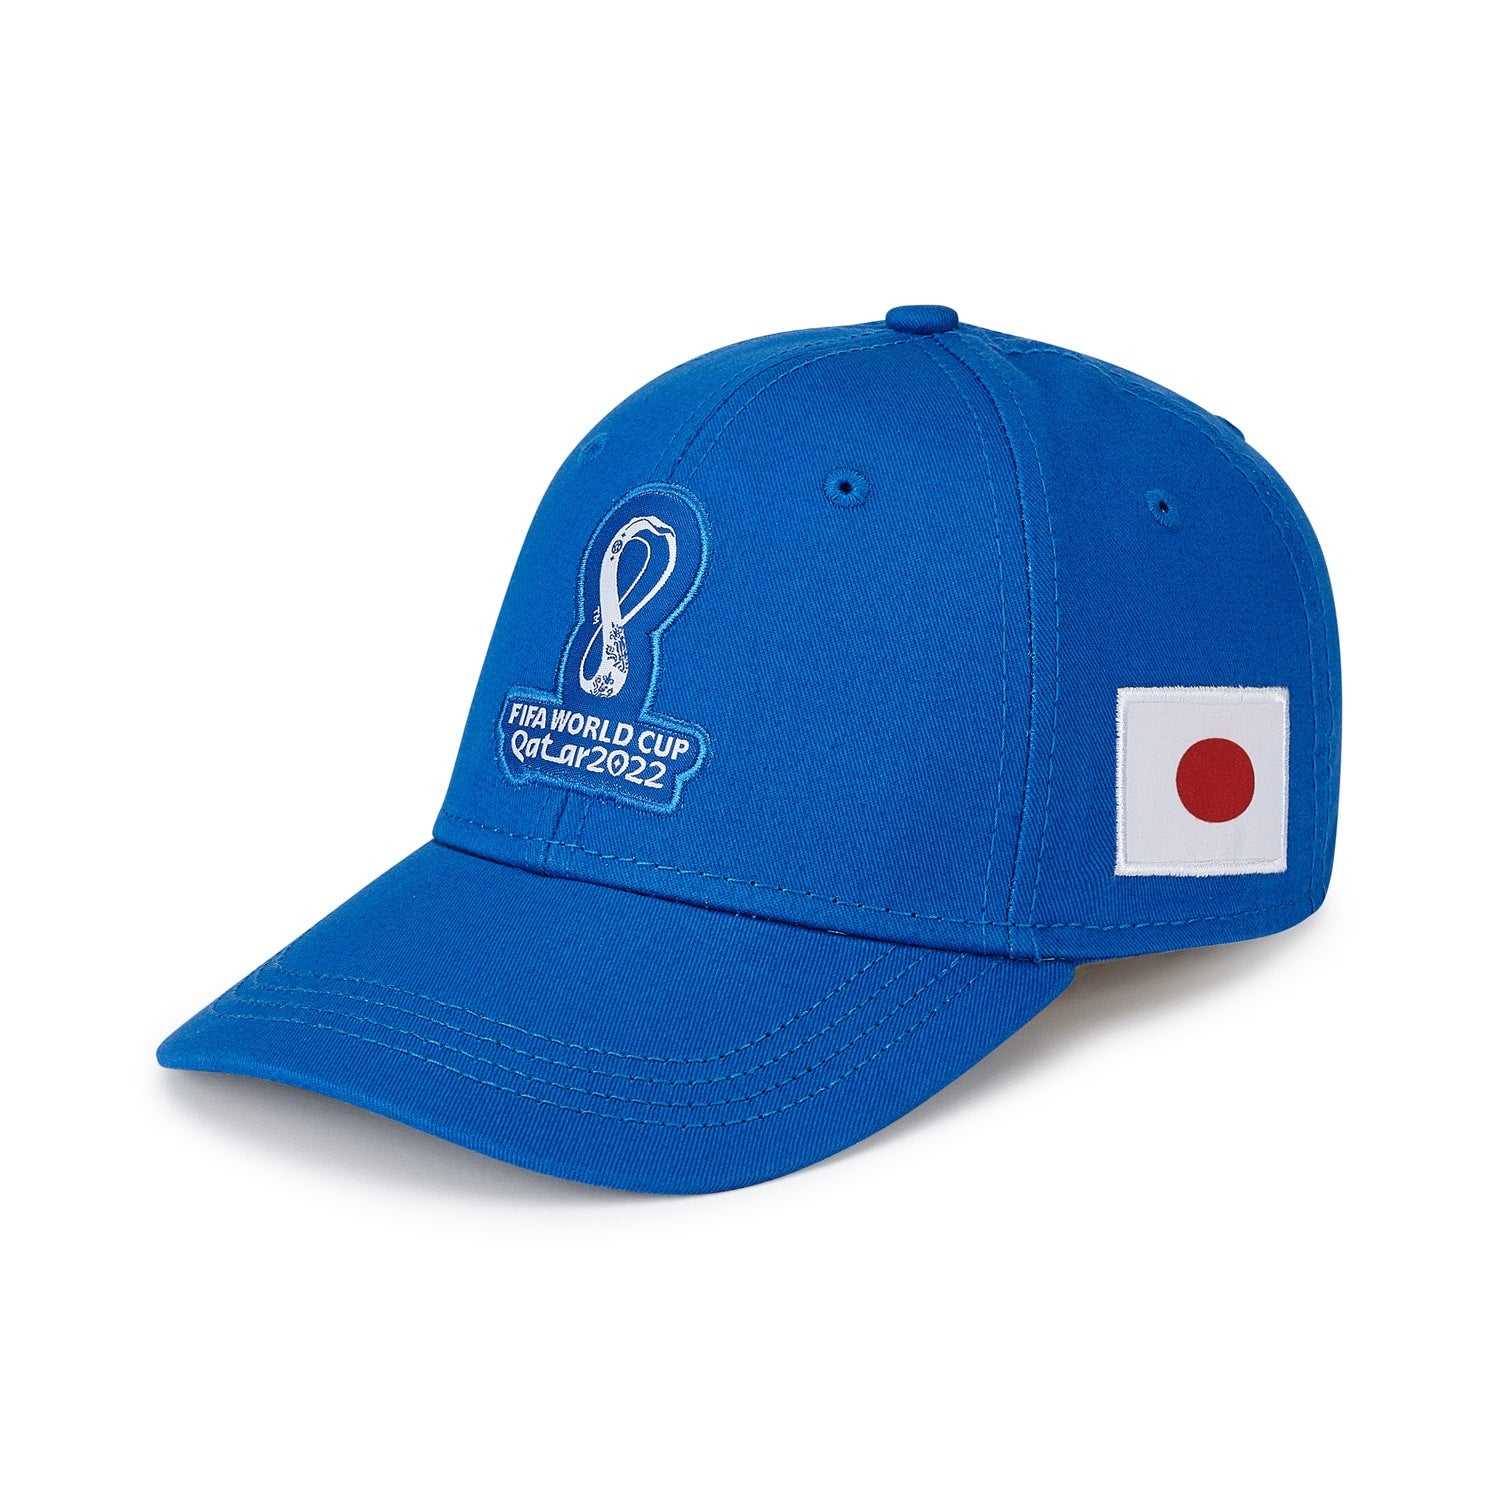 2022 World Cup Japan Blue Cap - Men's